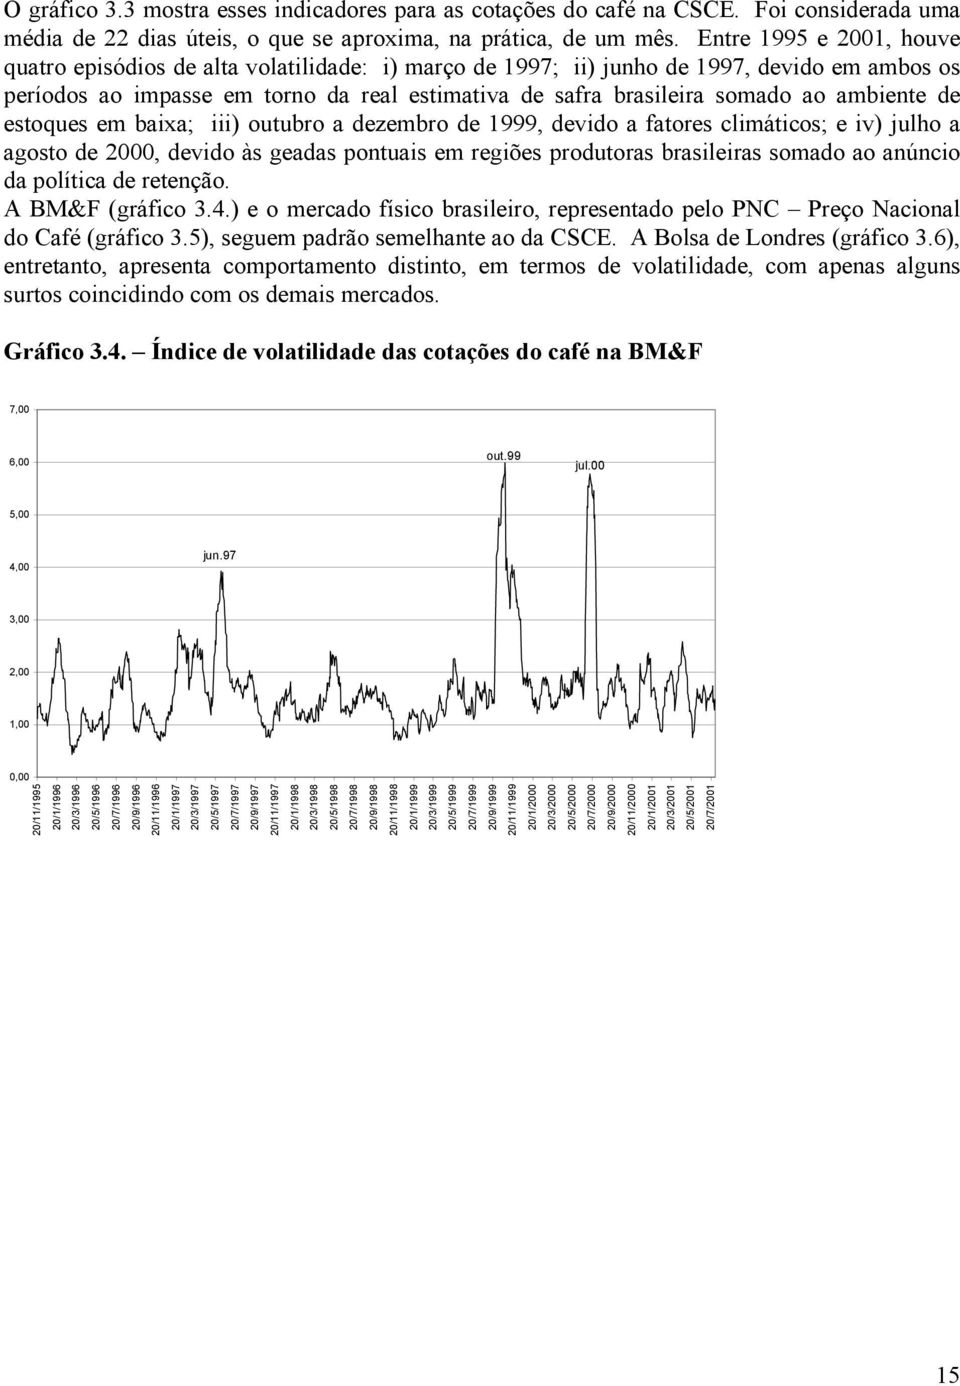 ambiente de estoques em baixa; iii) outubro a dezembro de 1999, devido a fatores climáticos; e iv) julho a agosto de 2000, devido às geadas pontuais em regiões produtoras brasileiras somado ao